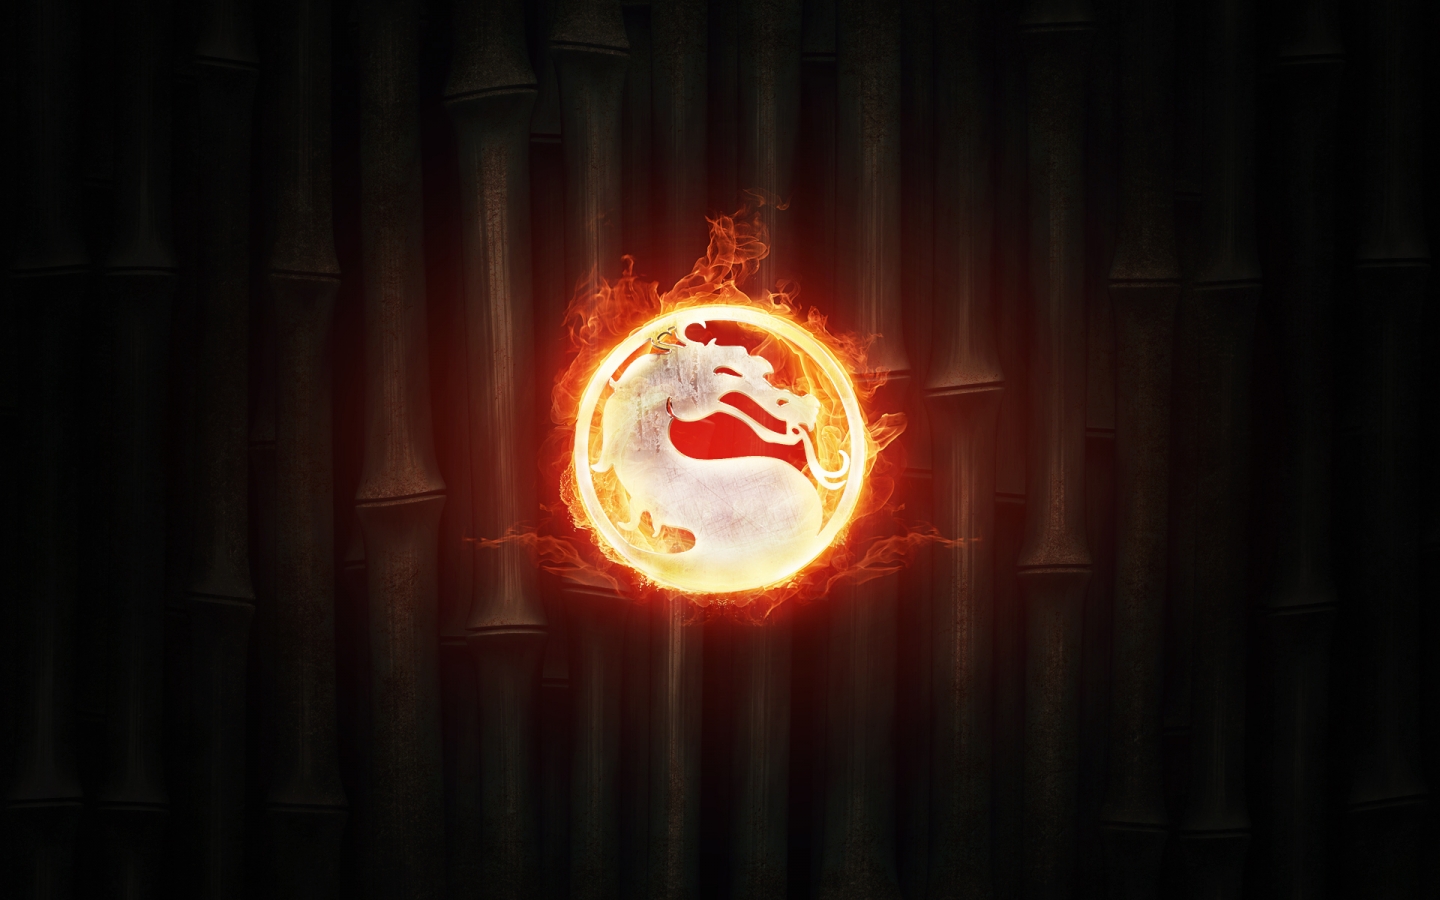 Mortal Kombat Fire for 1440 x 900 widescreen resolution